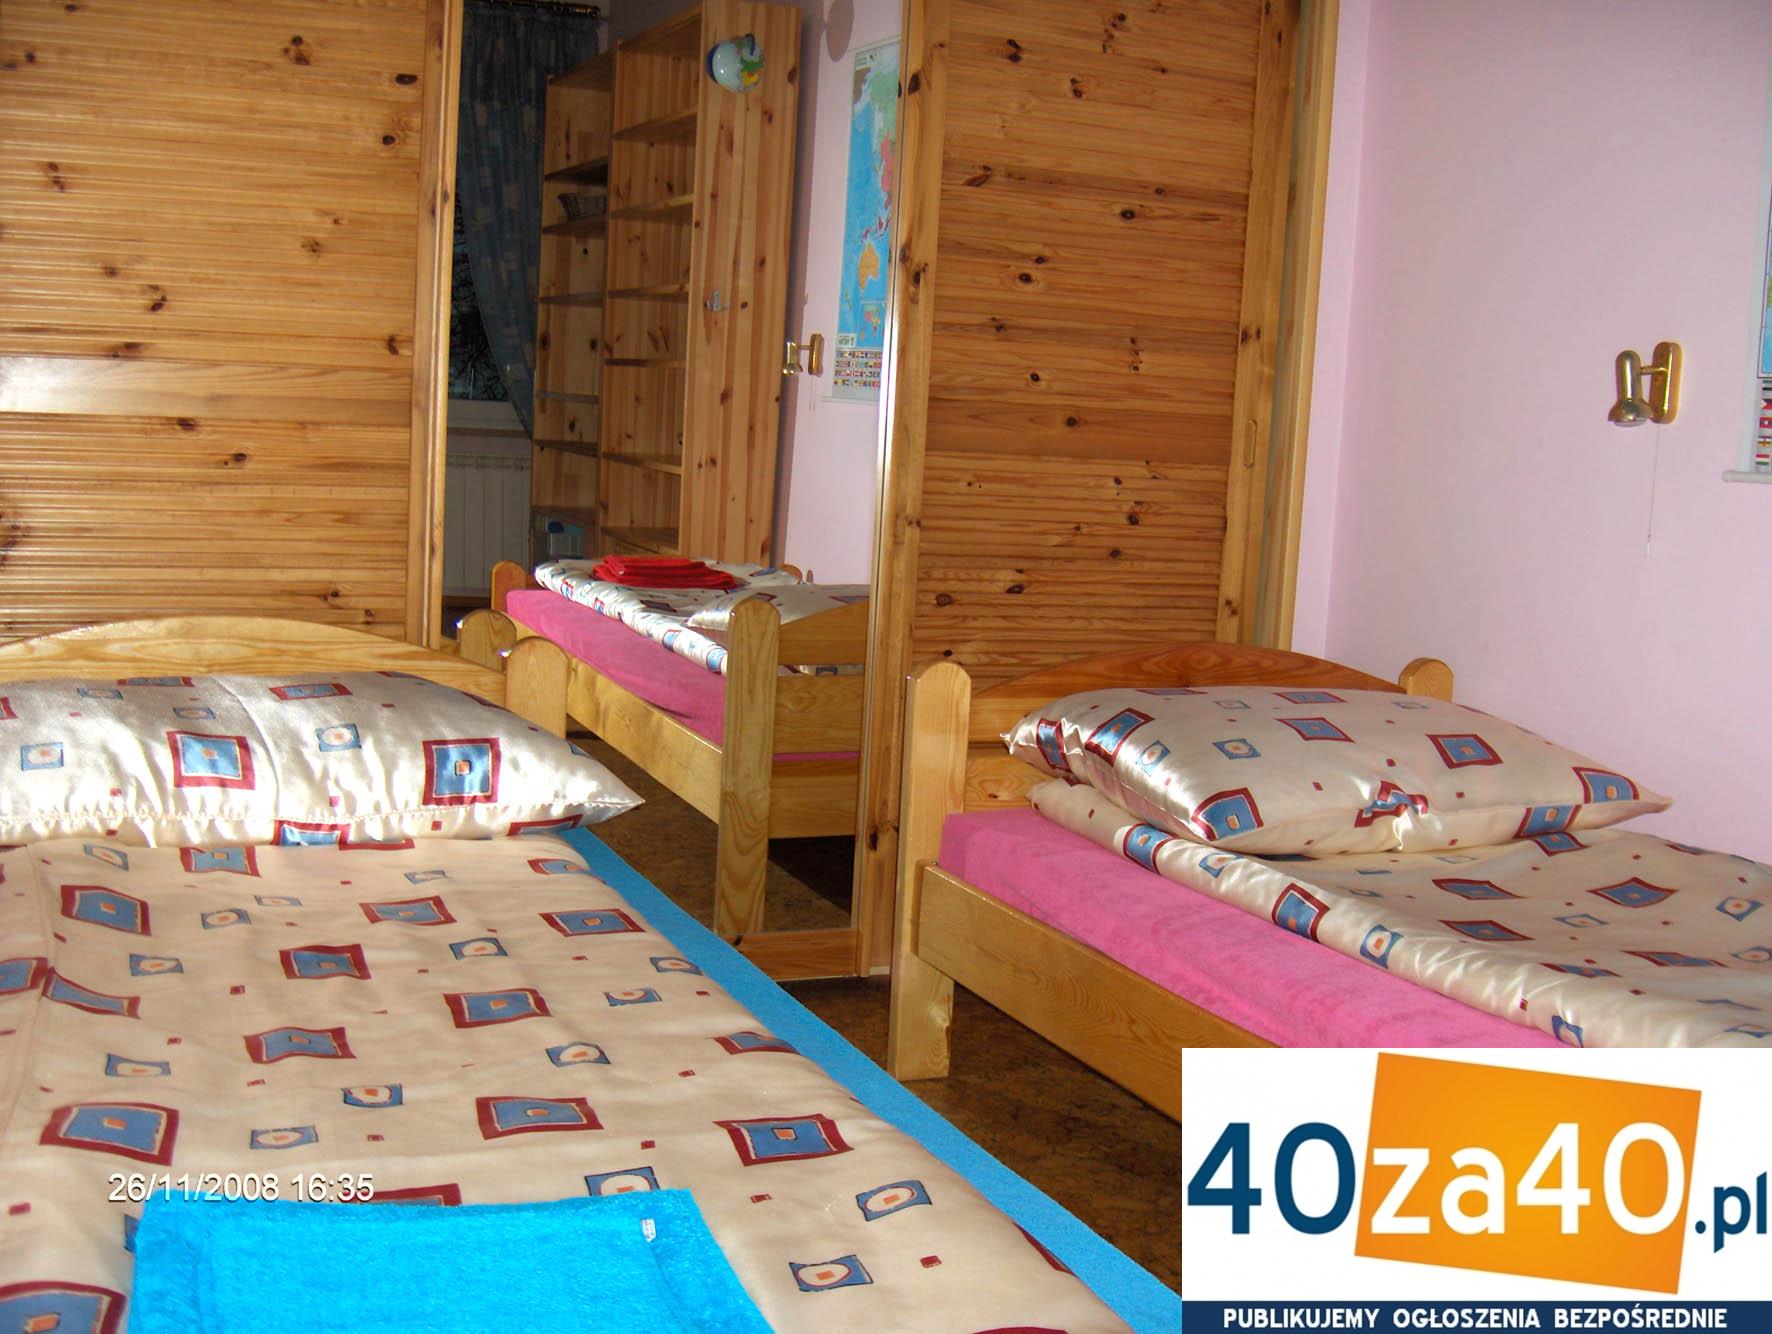 Dom do wynajęcia, powierzchnia: 240 m2, pokoje: 4, cena: 3 300,00 PLN, Poznań, kontakt: PL +48 607 414 918